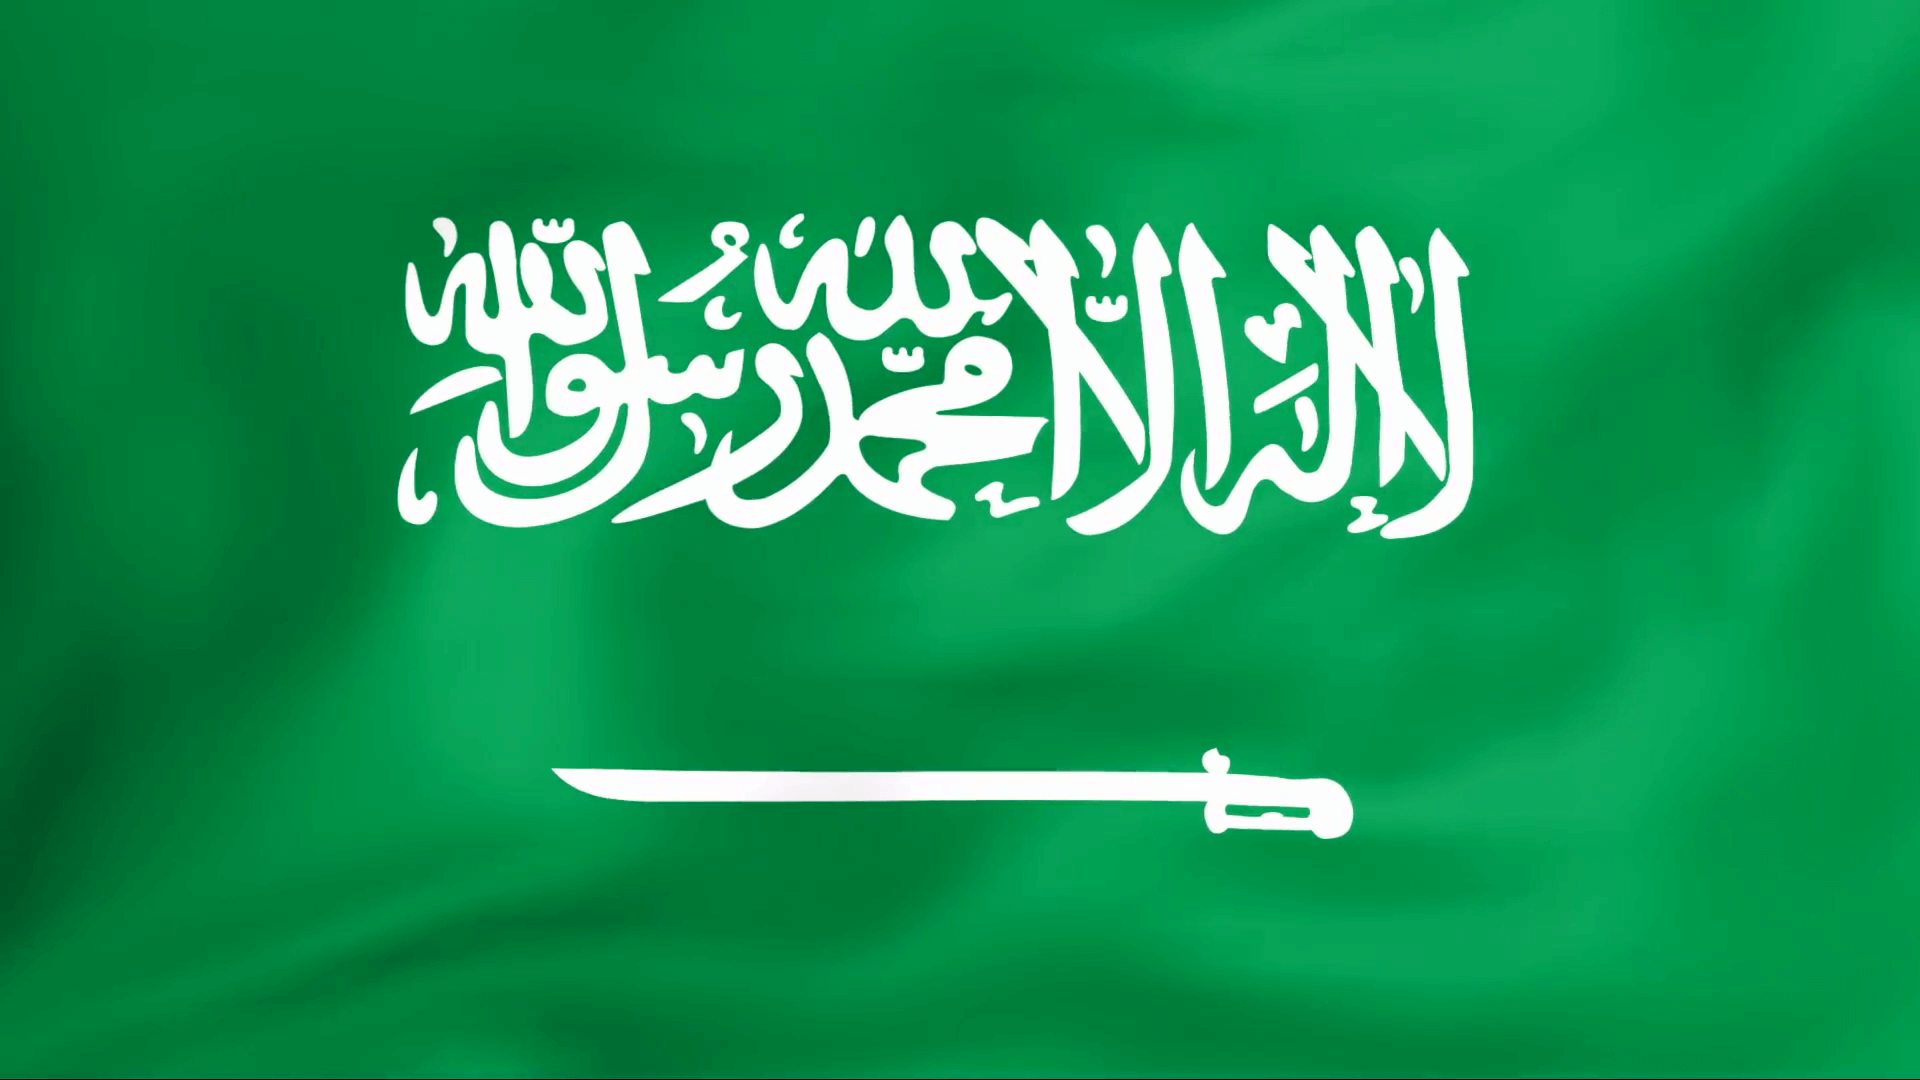 Saudi Arabia War Flag